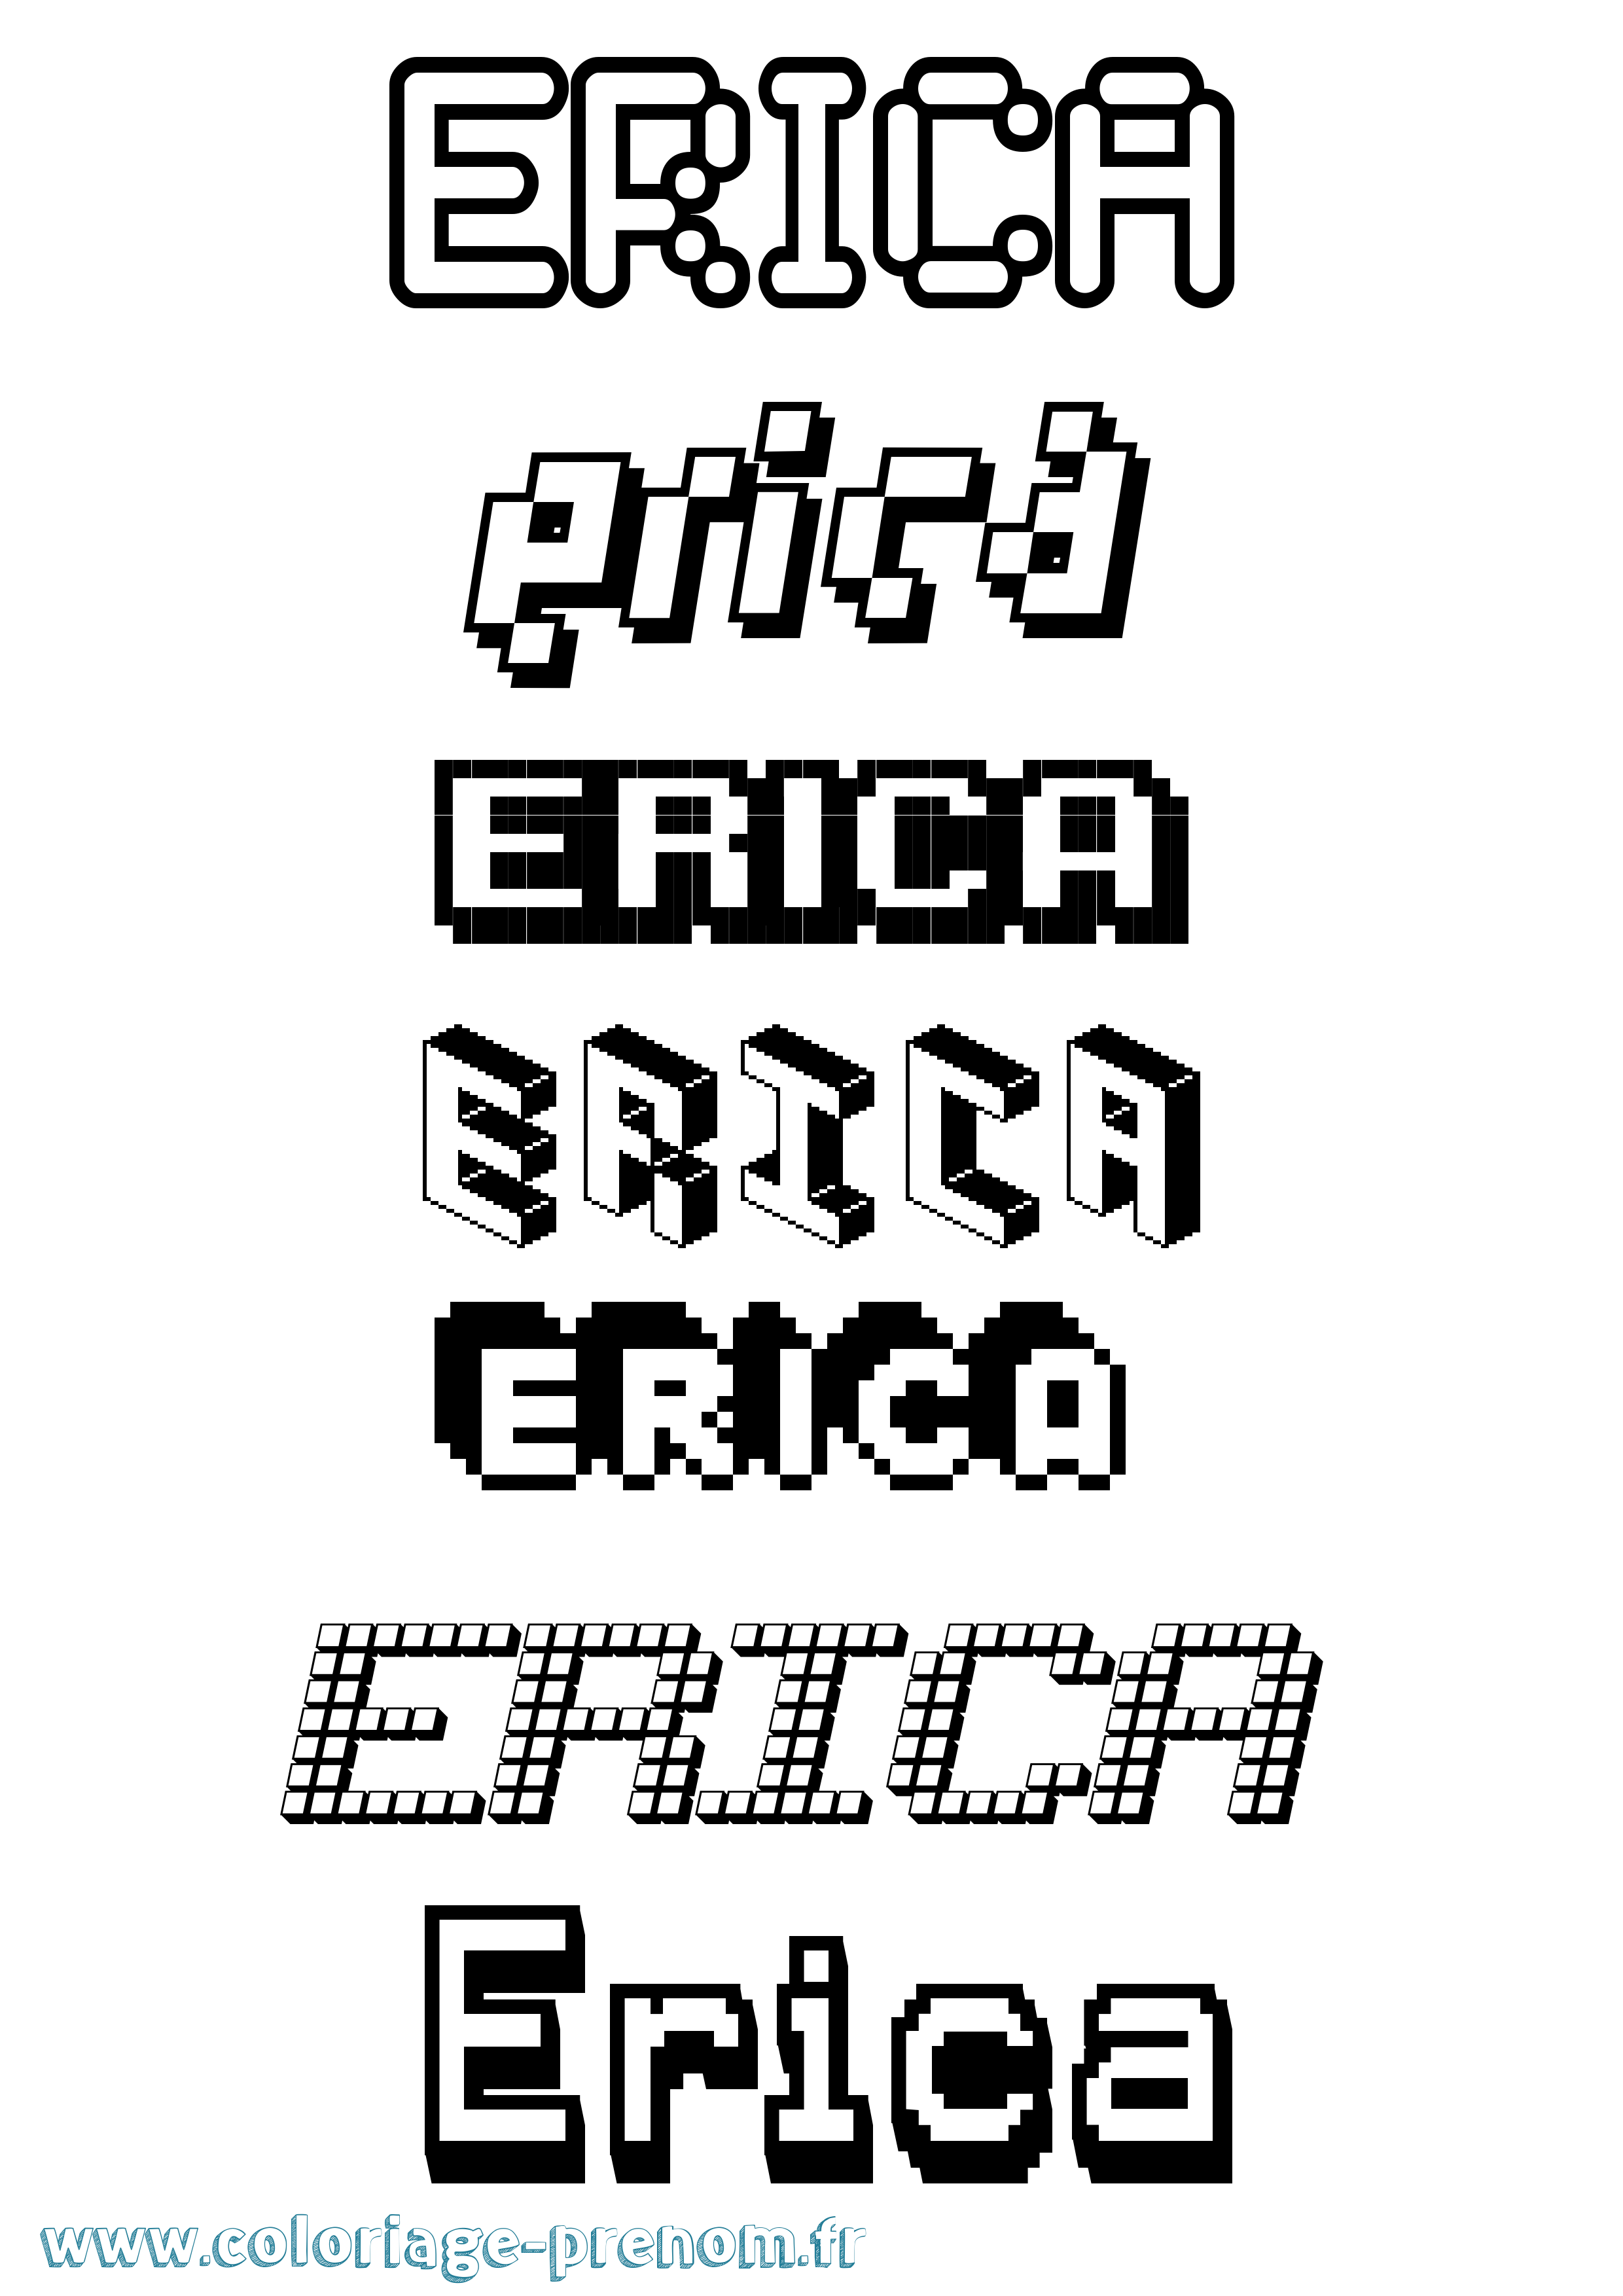 Coloriage prénom Erica Pixel